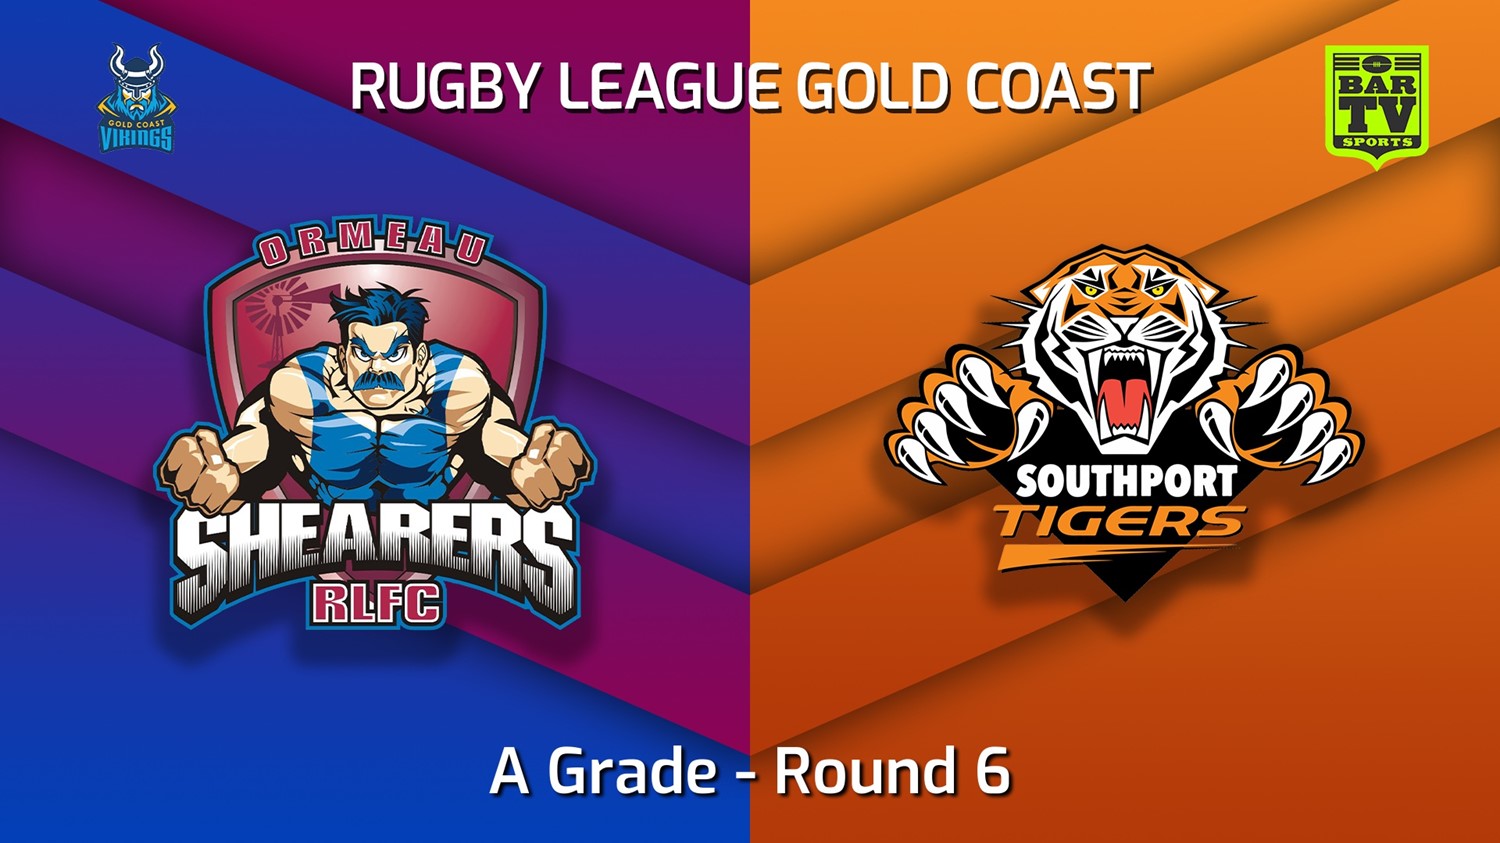 220515-Gold Coast Round 6 - A Grade - Ormeau Shearers v Southport Tigers (1) Slate Image